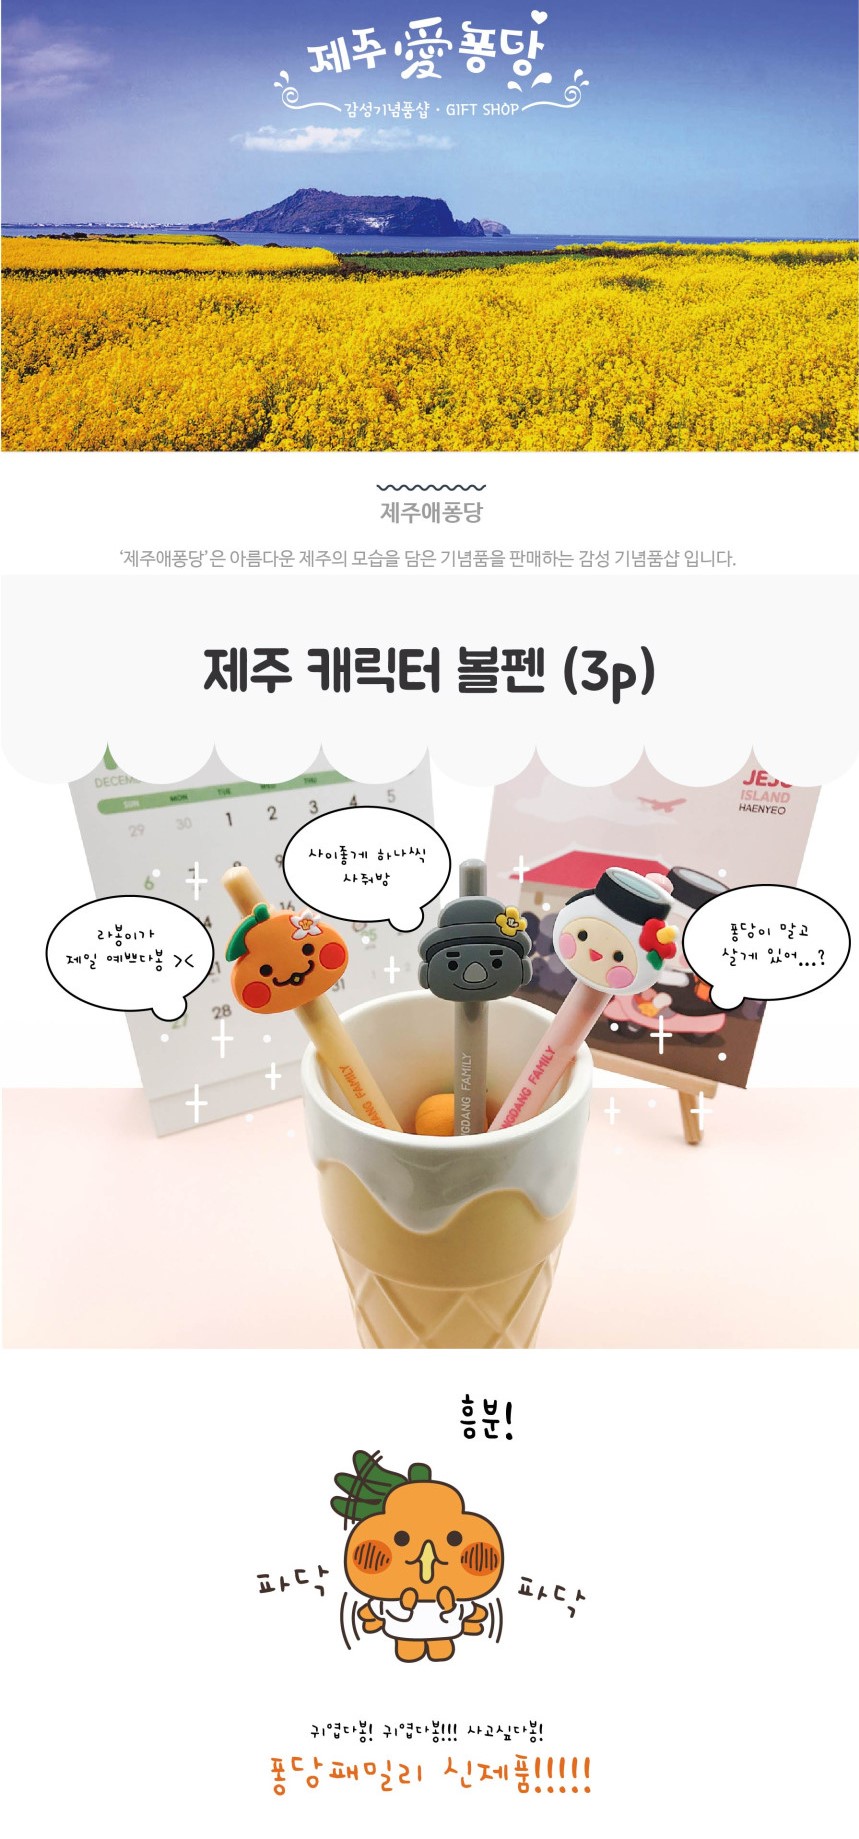 韓國食品-제주애퐁당 풍당패밀리 볼펜 1p